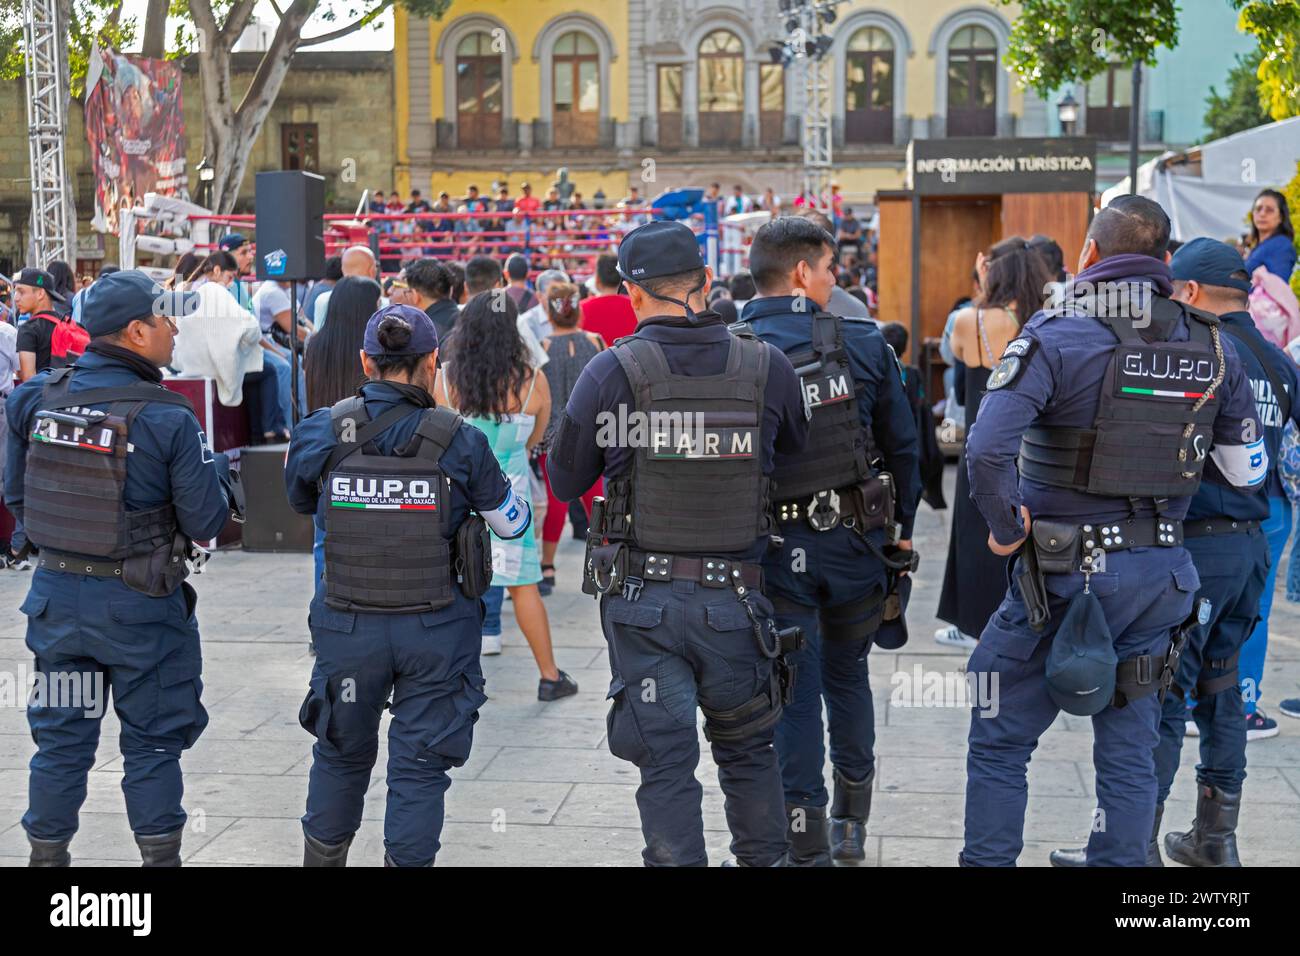 Oaxaca, México - Los oficiales de policía vigilan afuera de un partido de boxeo juvenil en el zócalo. Foto de stock